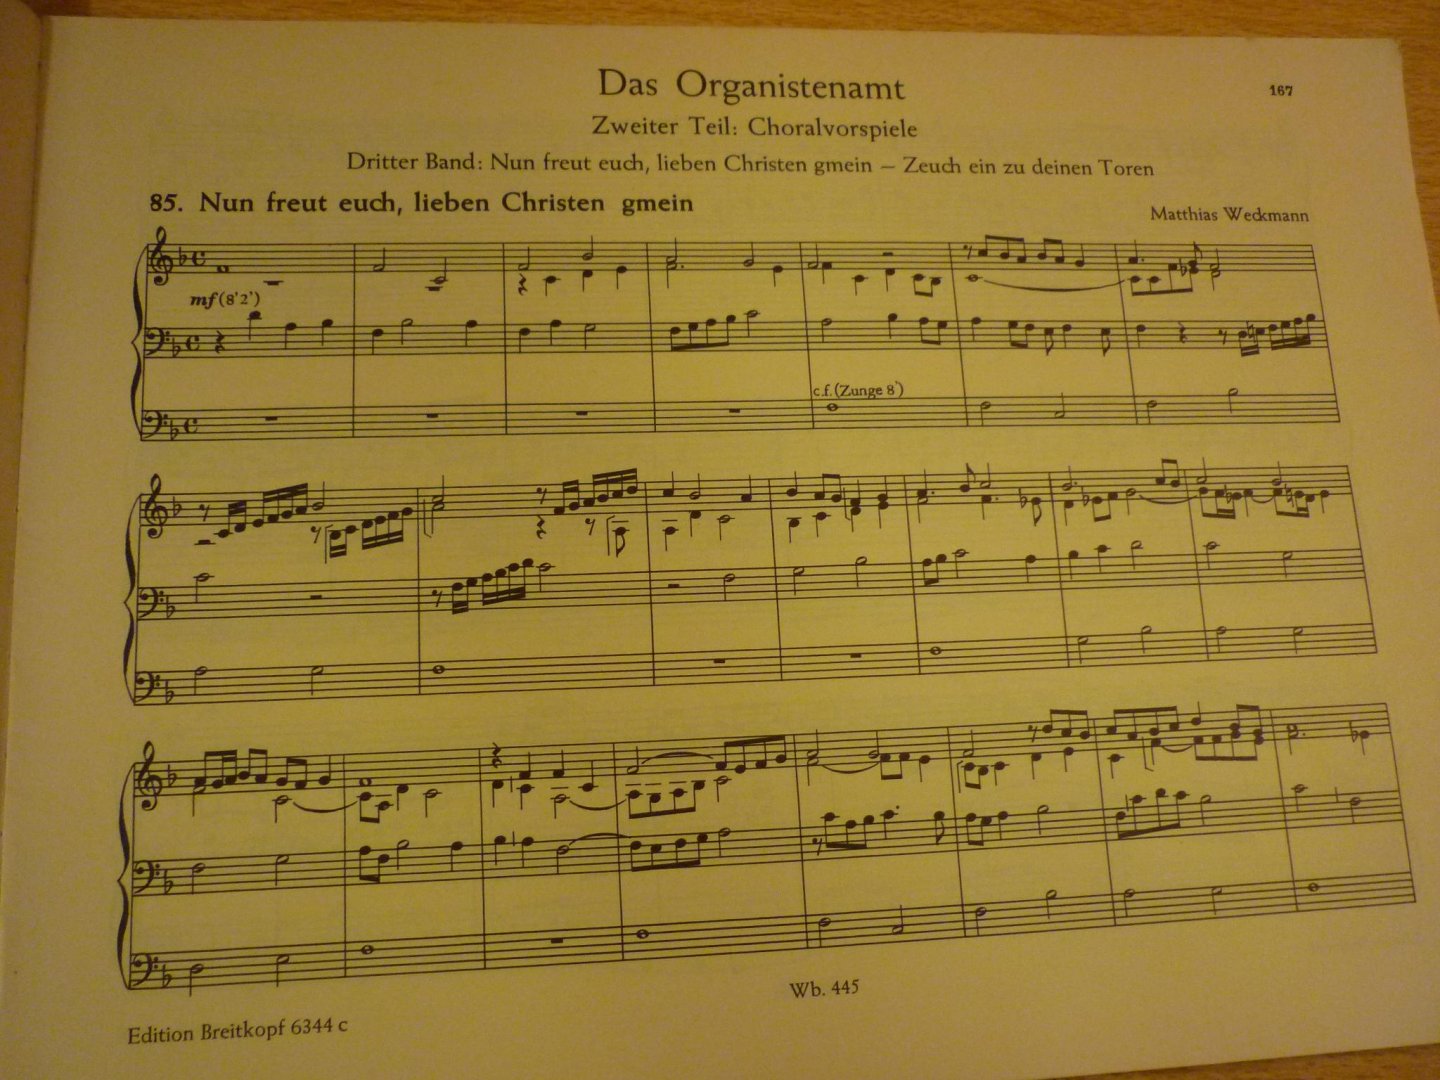 Ramin; Gunther - Das Organistenamt; II Choralvorspiele - Dritter Band (Diethard Hellmann)